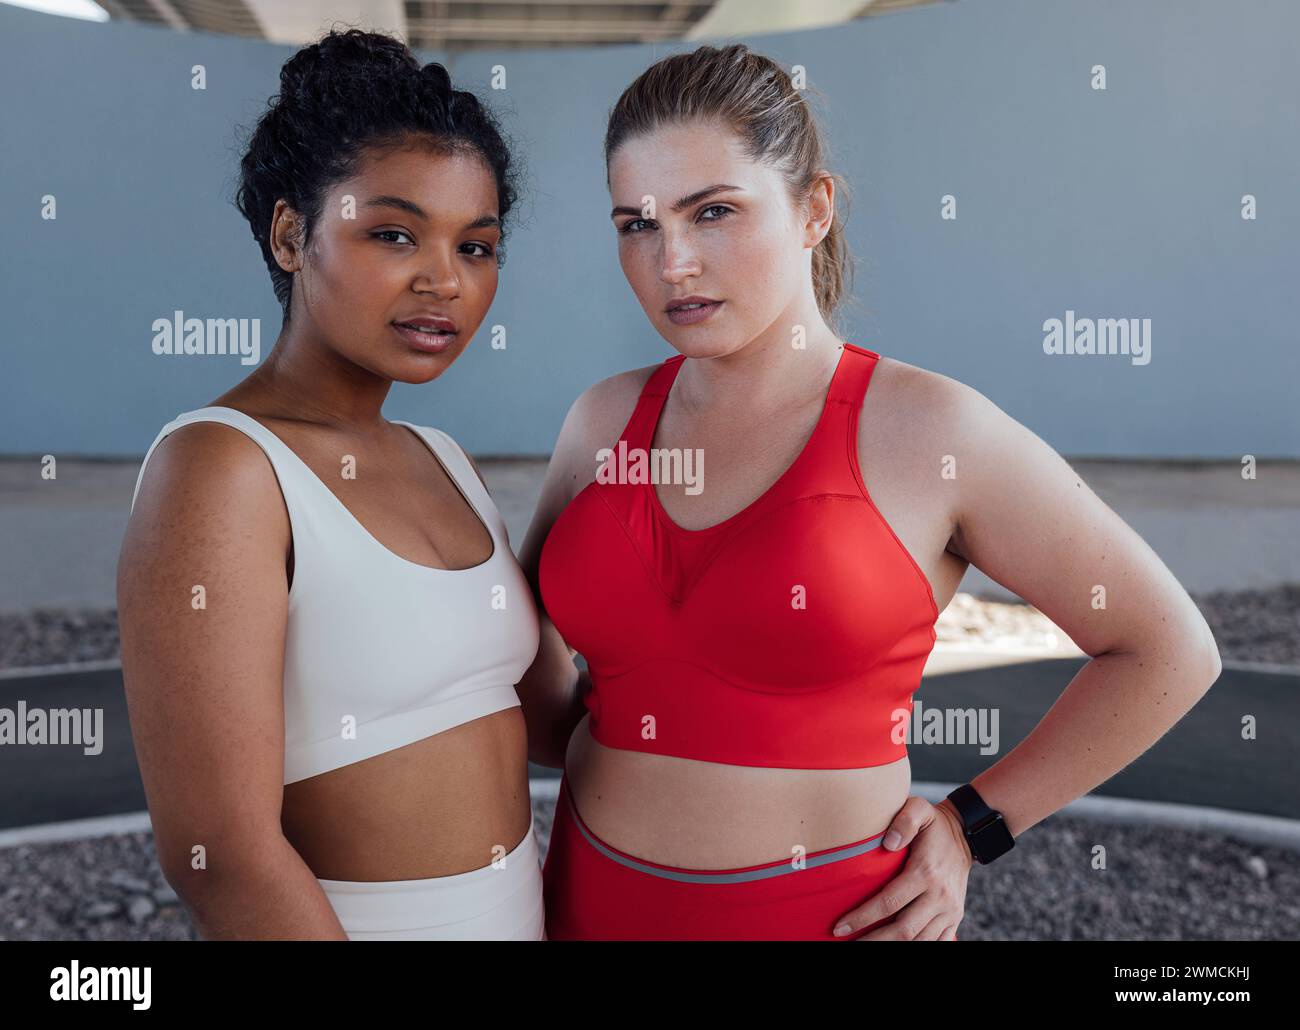 Ritratto di due giovani donne più grandi in abbigliamento sportivo. Due donne di diverse etnie stanno insieme dopo l'allenamento all'aperto. Ritratto di due anni Foto Stock